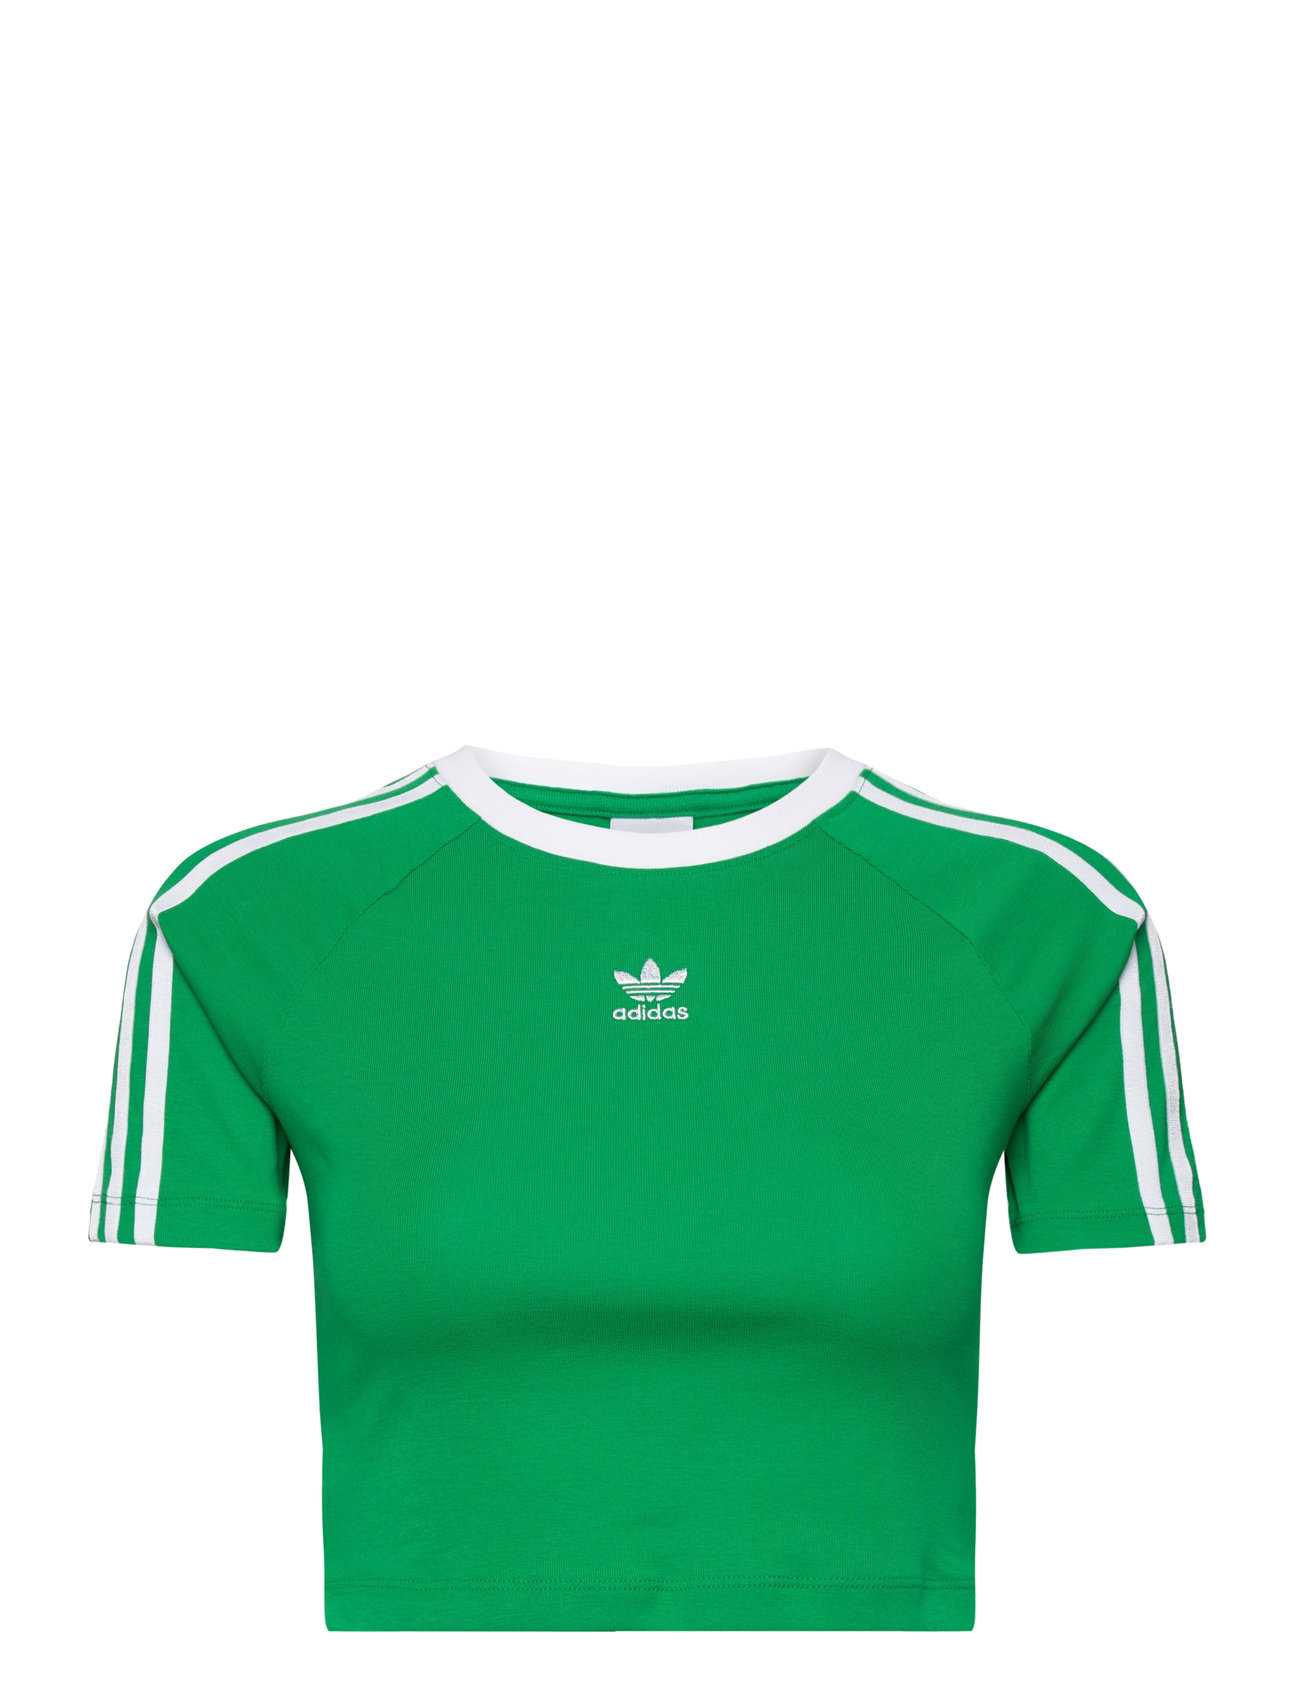 3 S Baby Tee Sport Crop Tops Short-sleeved Crop Tops Green Adidas Originals